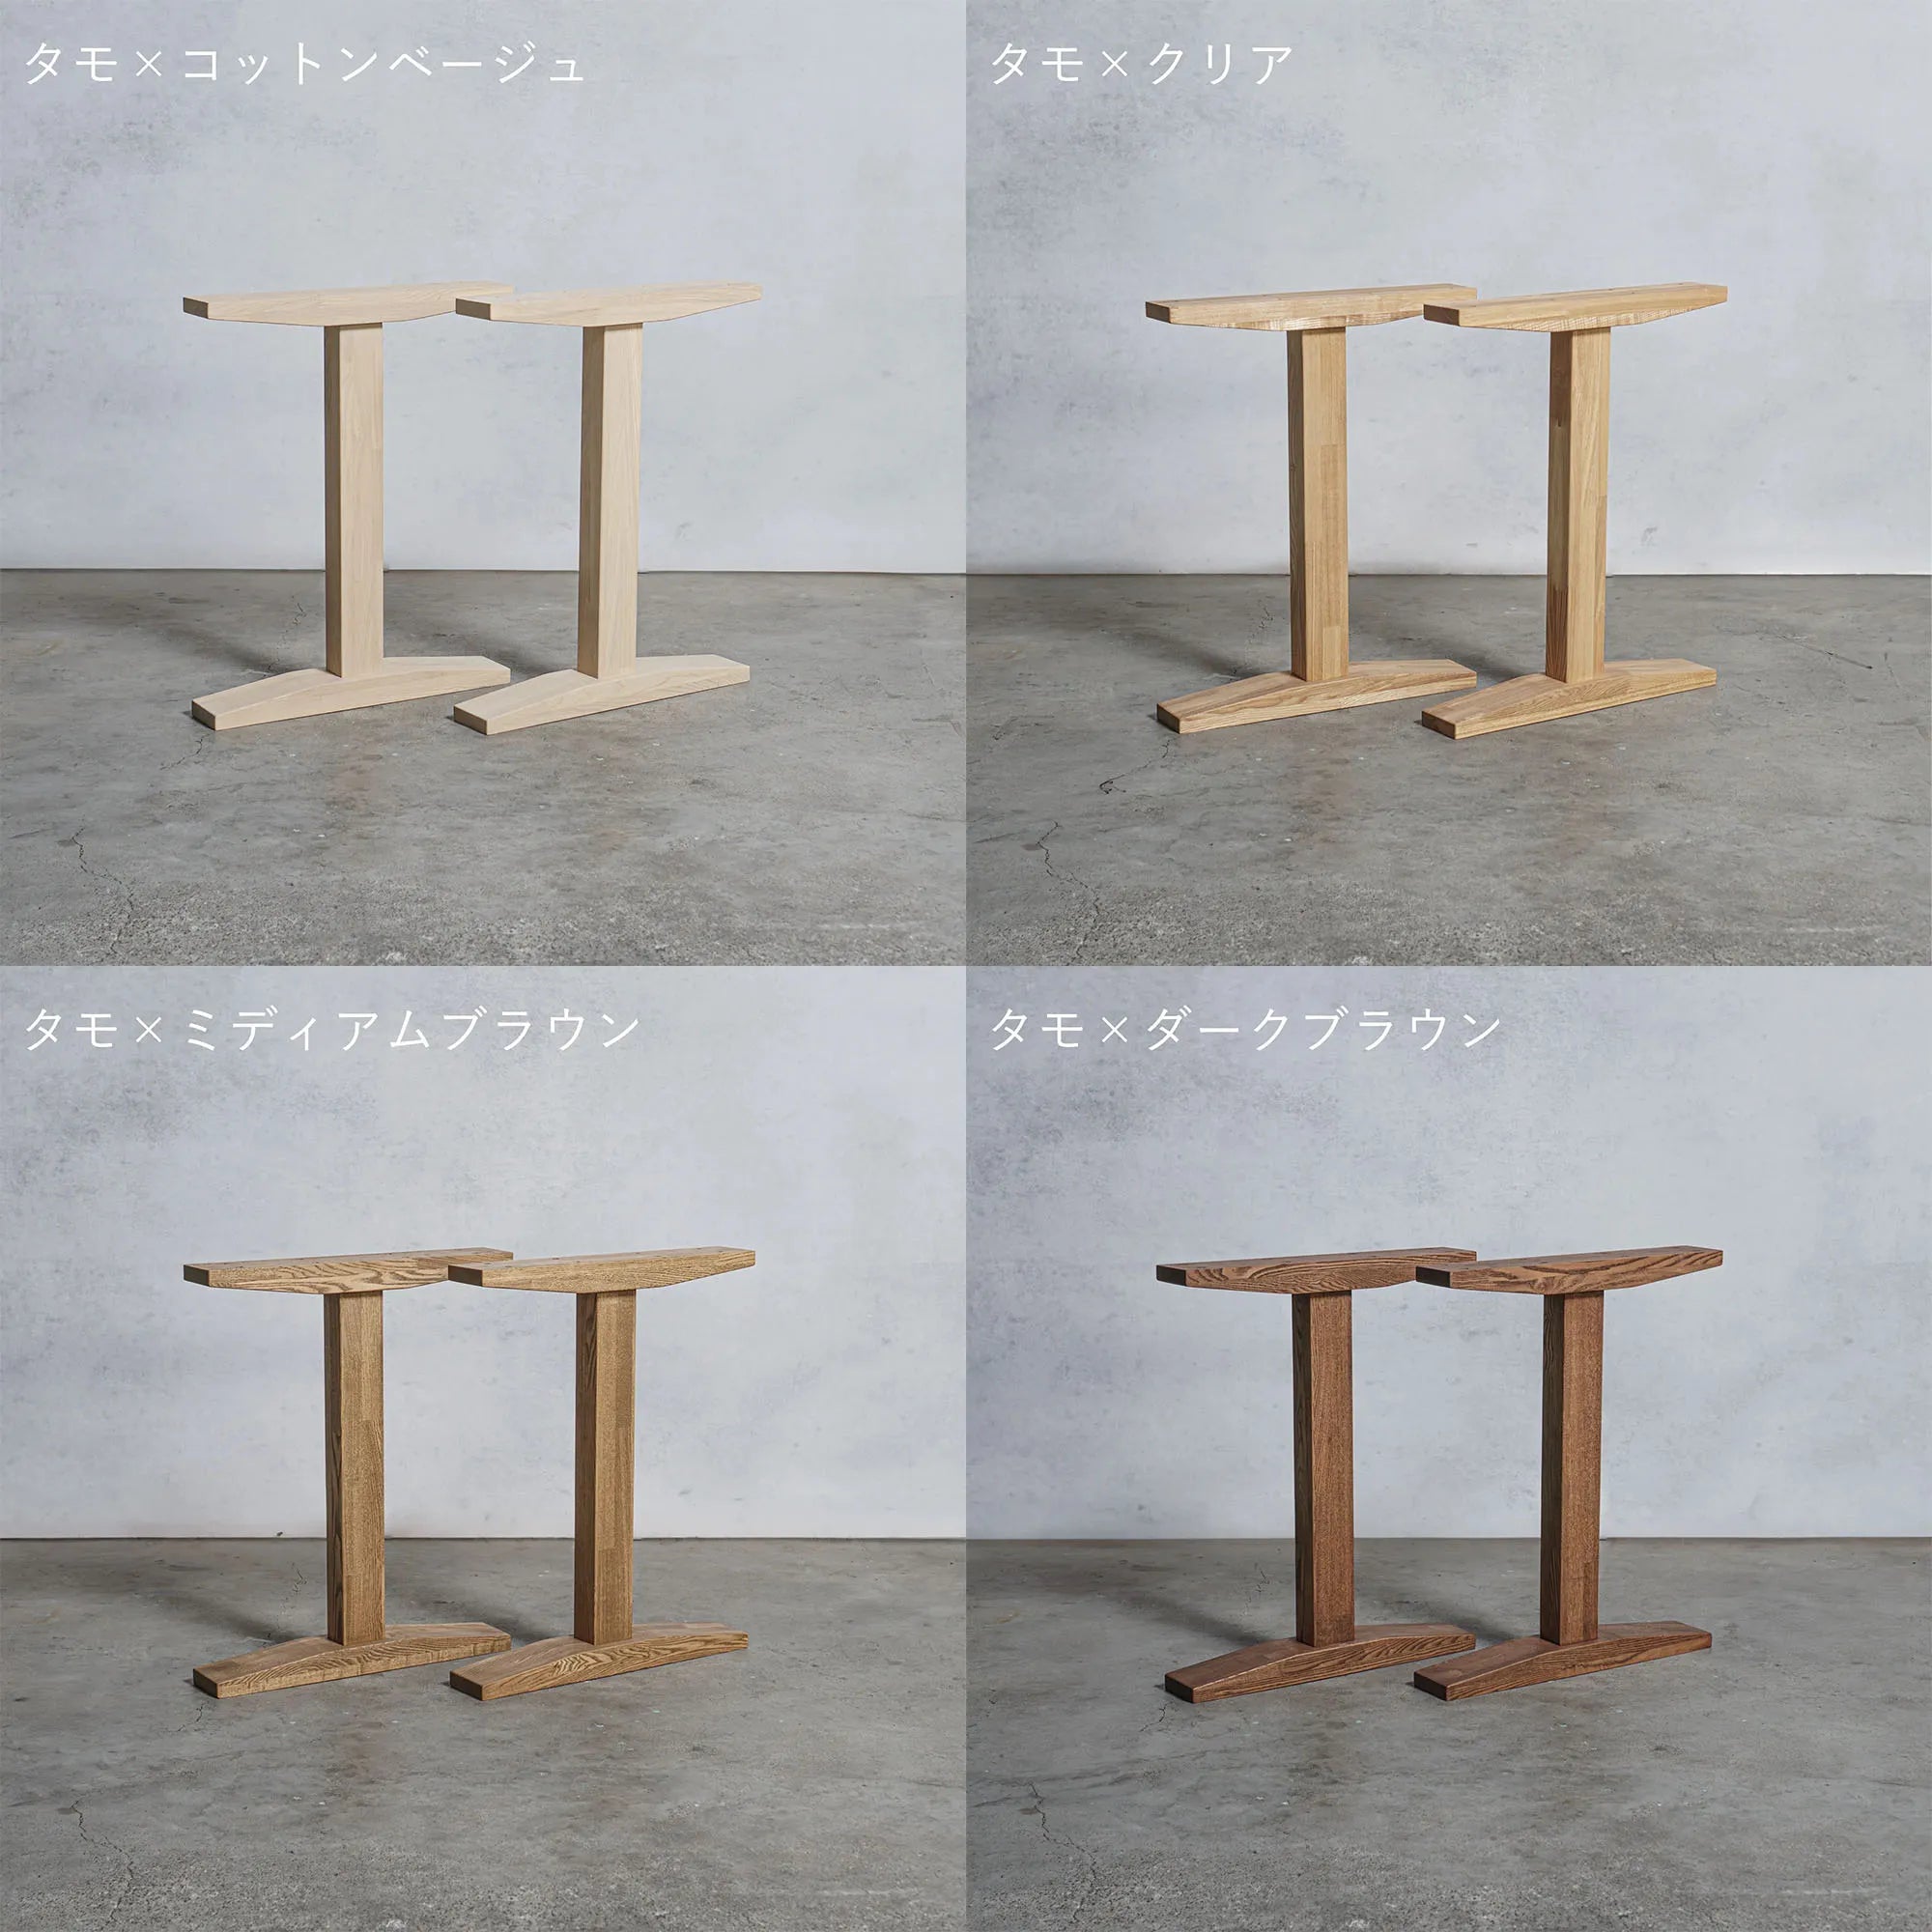 12,056円木材テーブル 【パープル紫色】DIY オーダーメイド